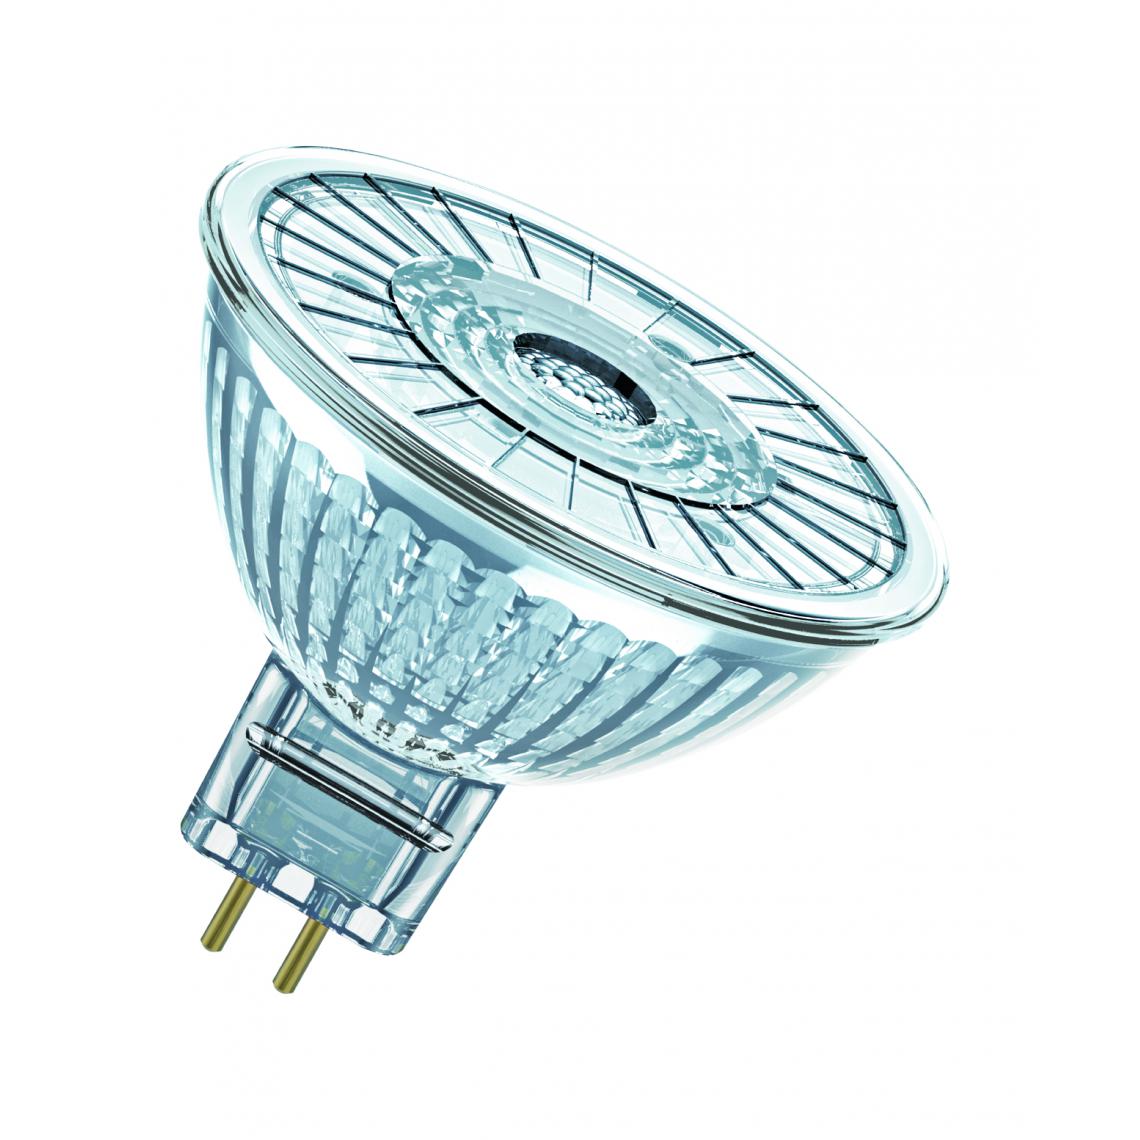 Osram - ampoule à led - osram parathom - gu5.3 - 2.6w - 4000k - 230 lm - mr16 - osram 431317 - Ampoules LED